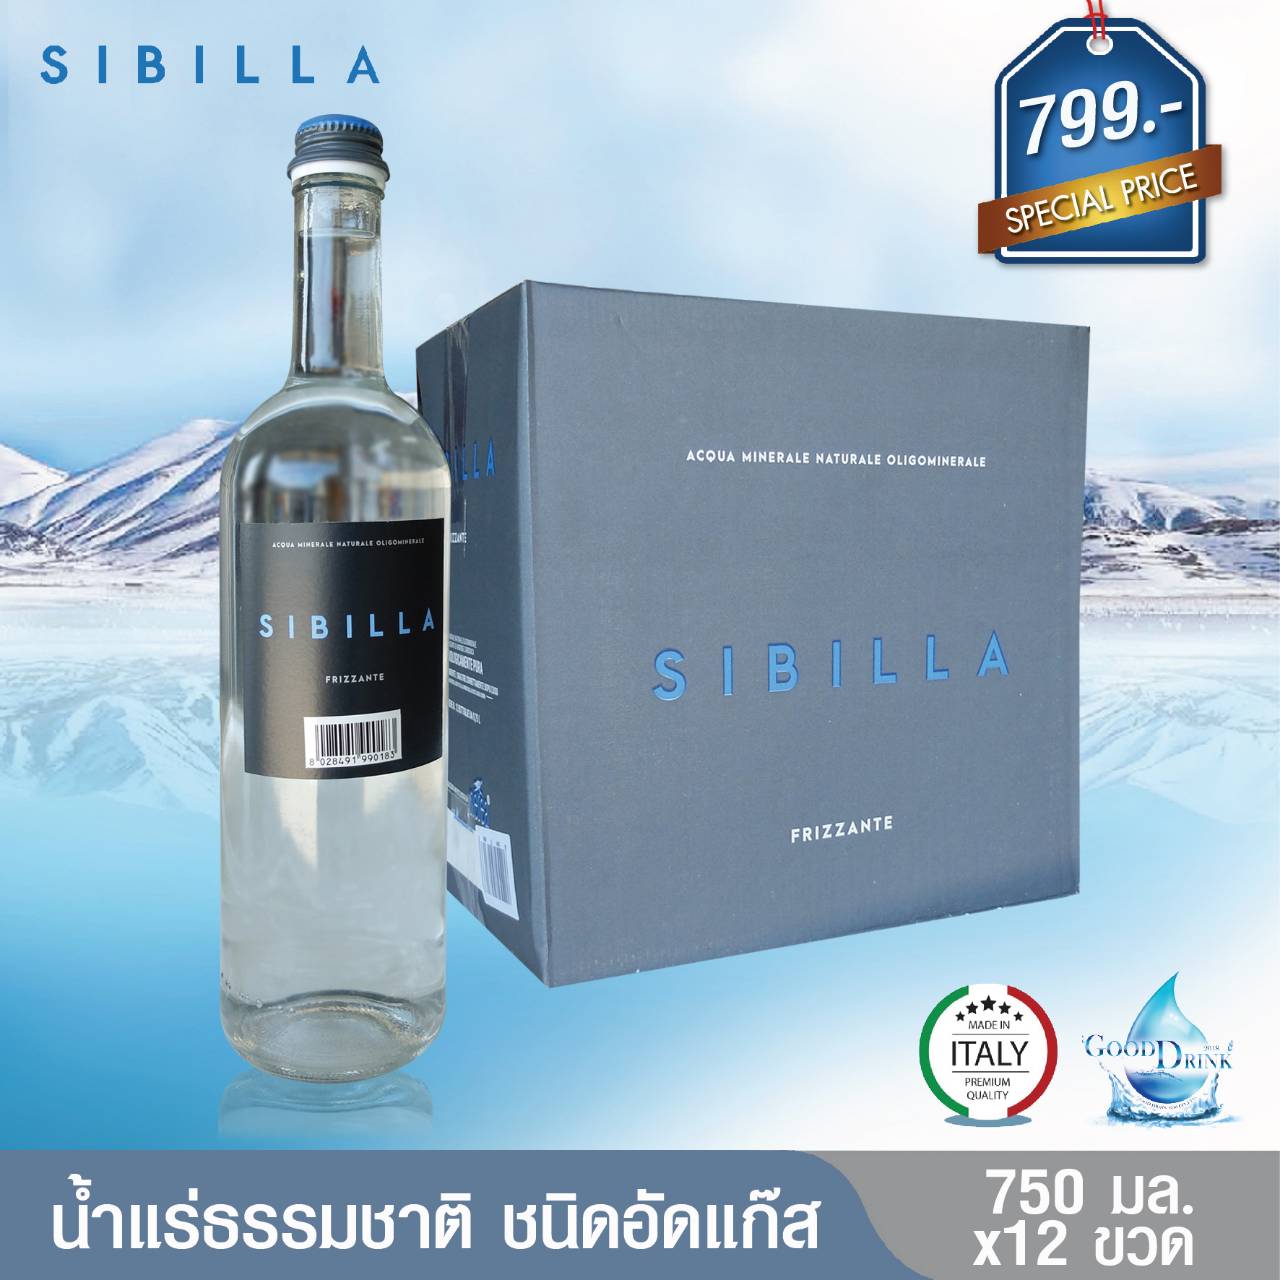 Sibilla Sparkling Mineral Water VAP glass bottle 750 ML. Pack 12 bottles ซิบิลลา น้ำแร่ธรรมชาติชนิดอัดแก๊ส ขวดแก้ว 750 มล. แพค 12 ขวด